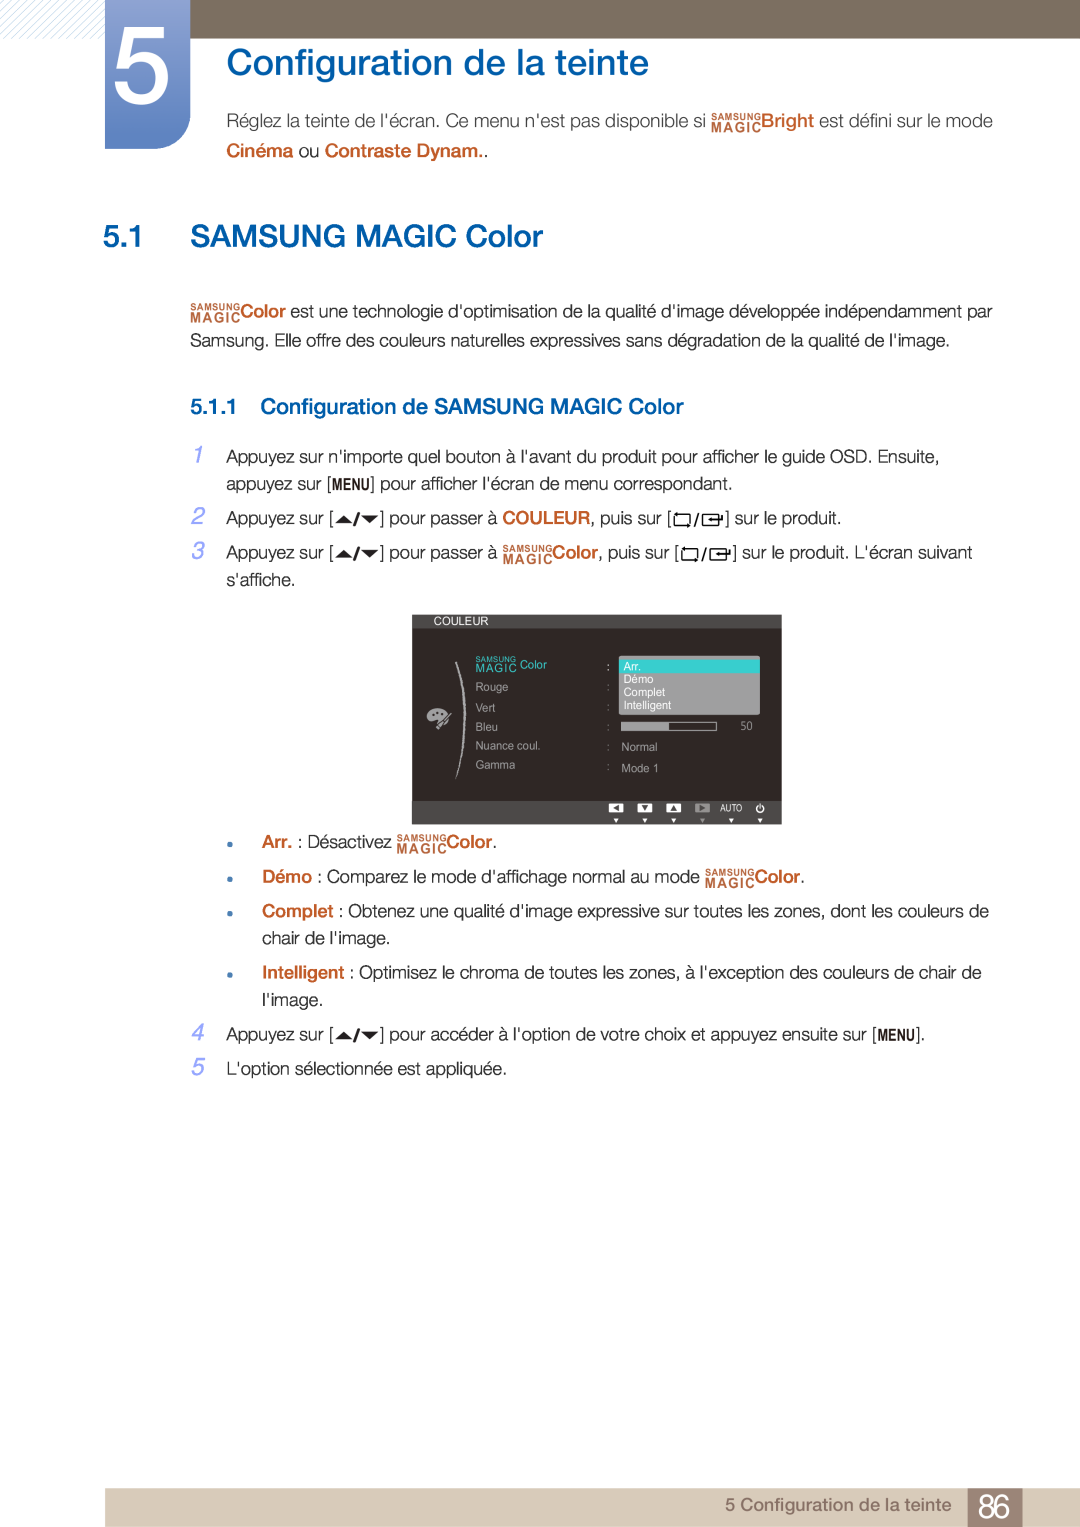 Samsung LF22NTBHBNM/EN Configuration de la teinte, Configuration de SAMSUNG MAGIC Color, Cinéma ou Contraste Dynam 